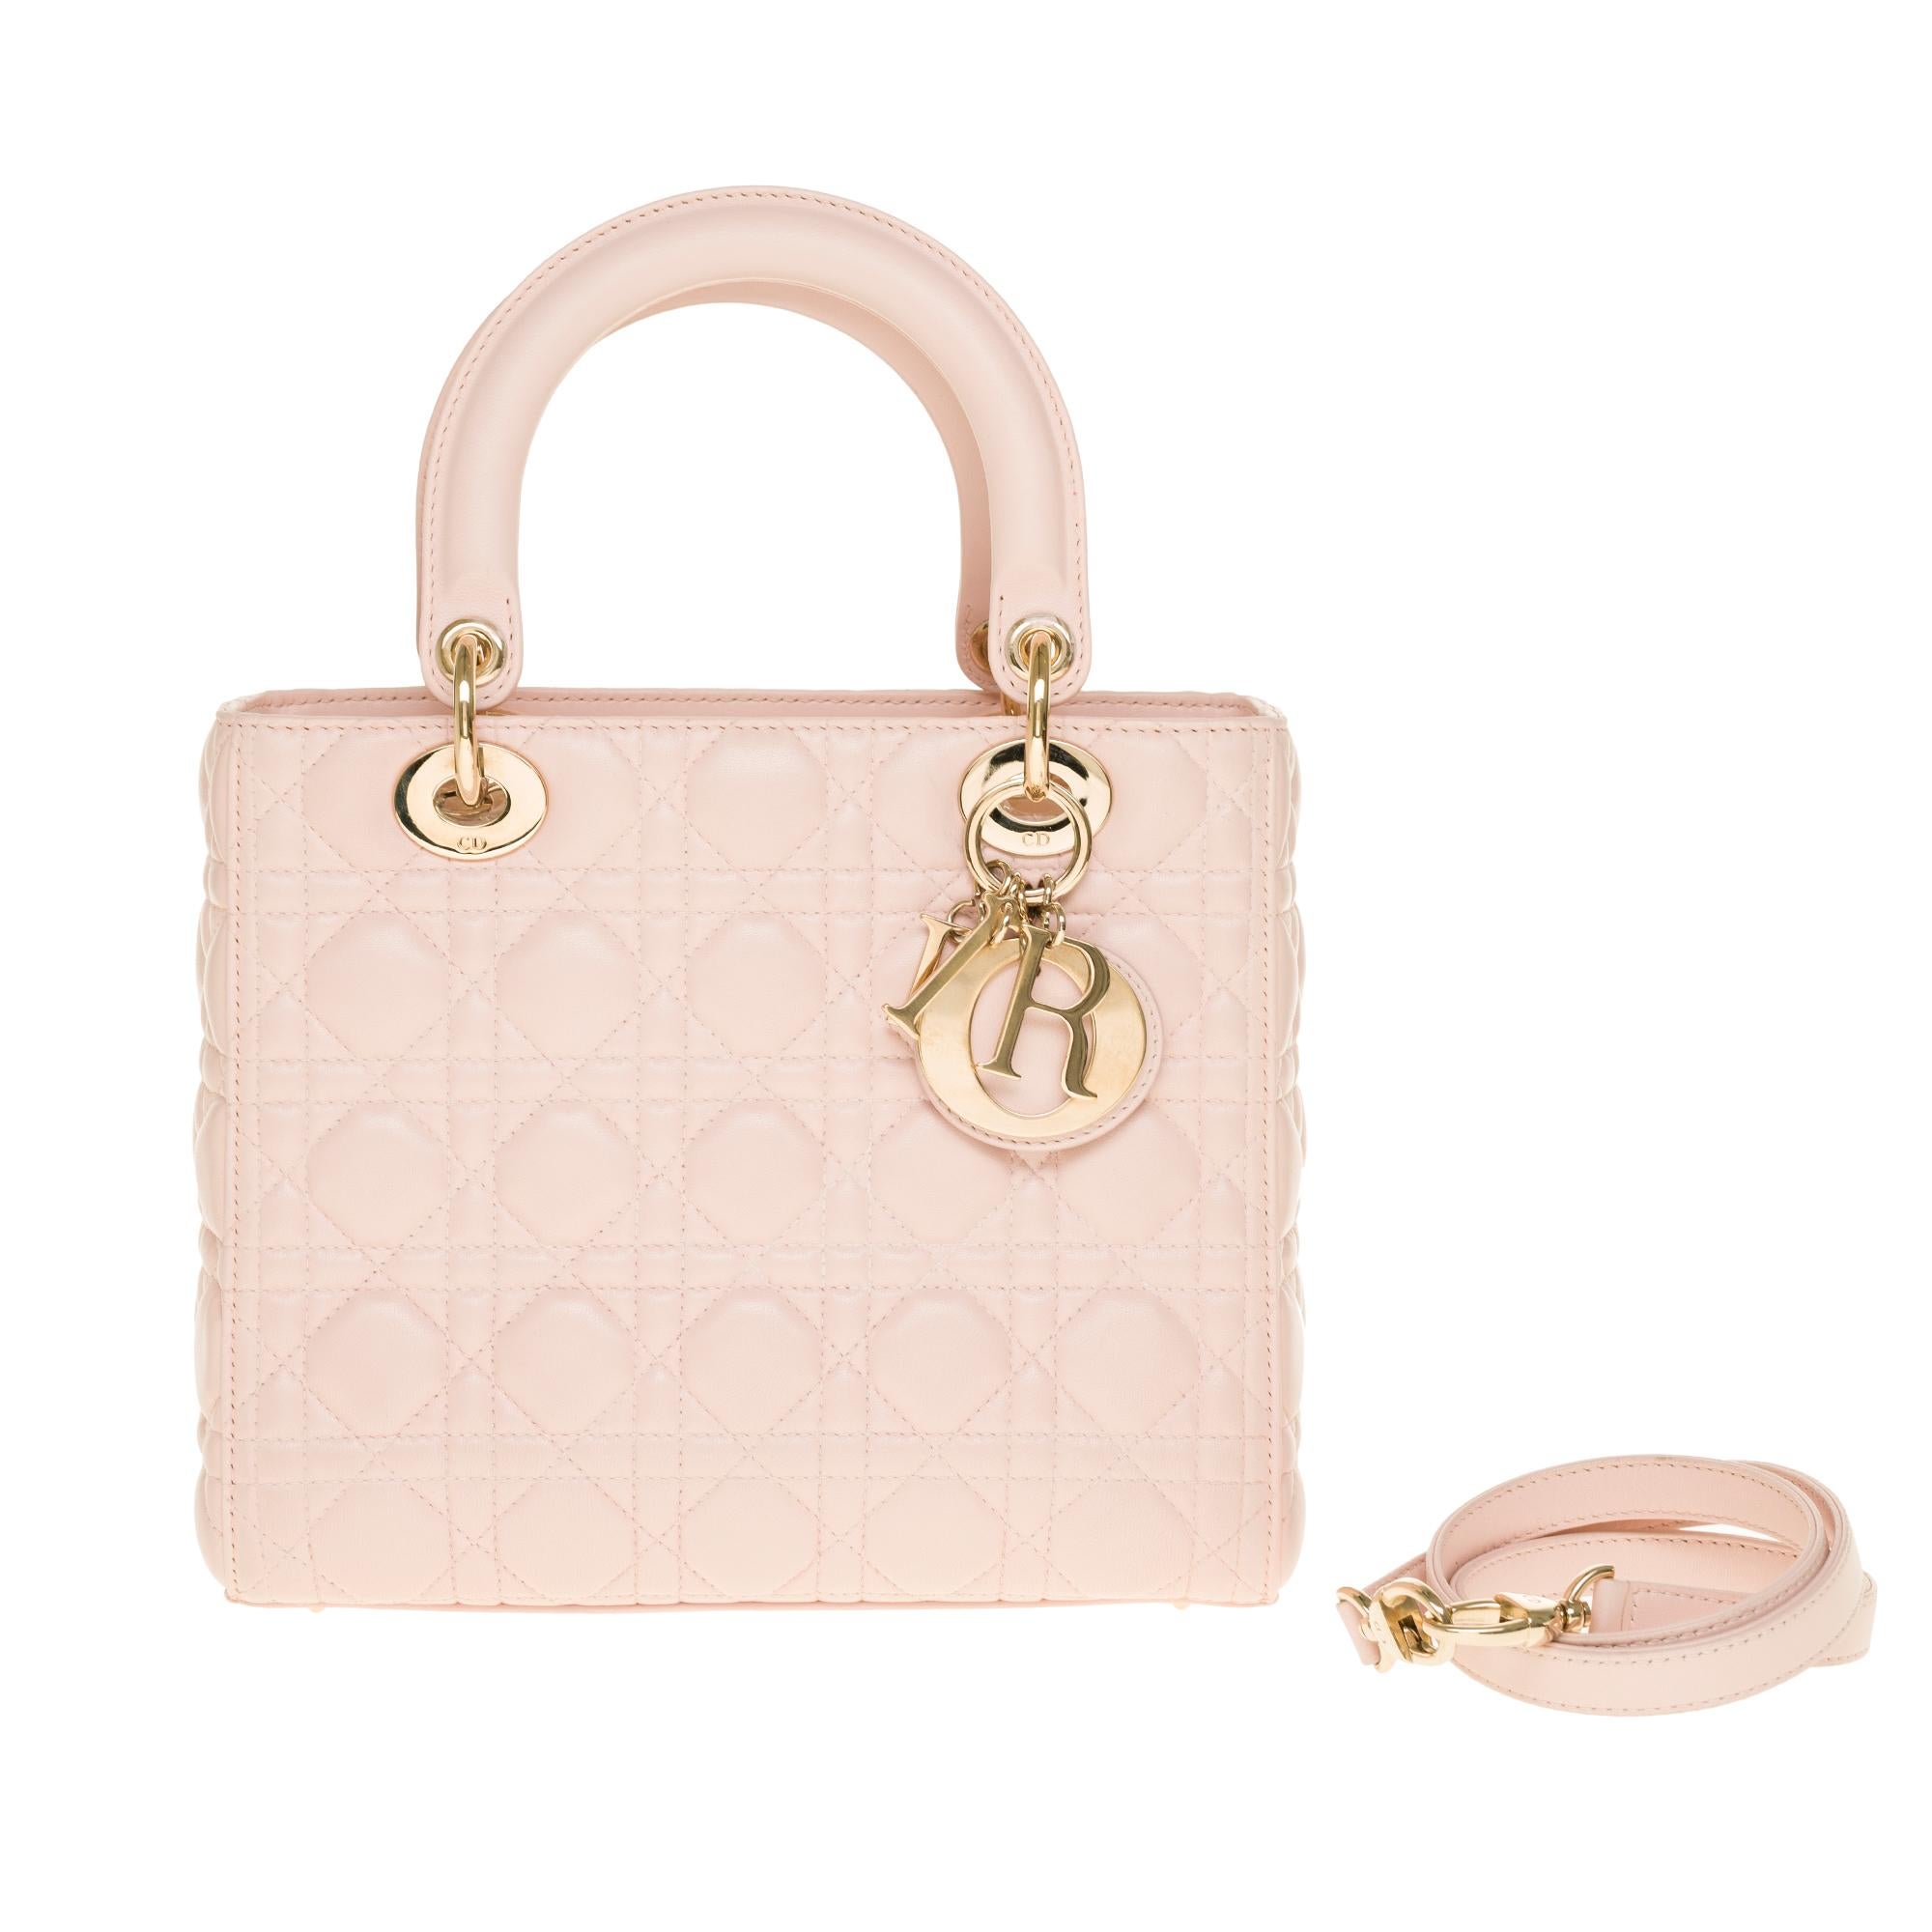  Christian Dior Lady Dior Medium size handbag in Baby Pink cannage leather, CHW 6